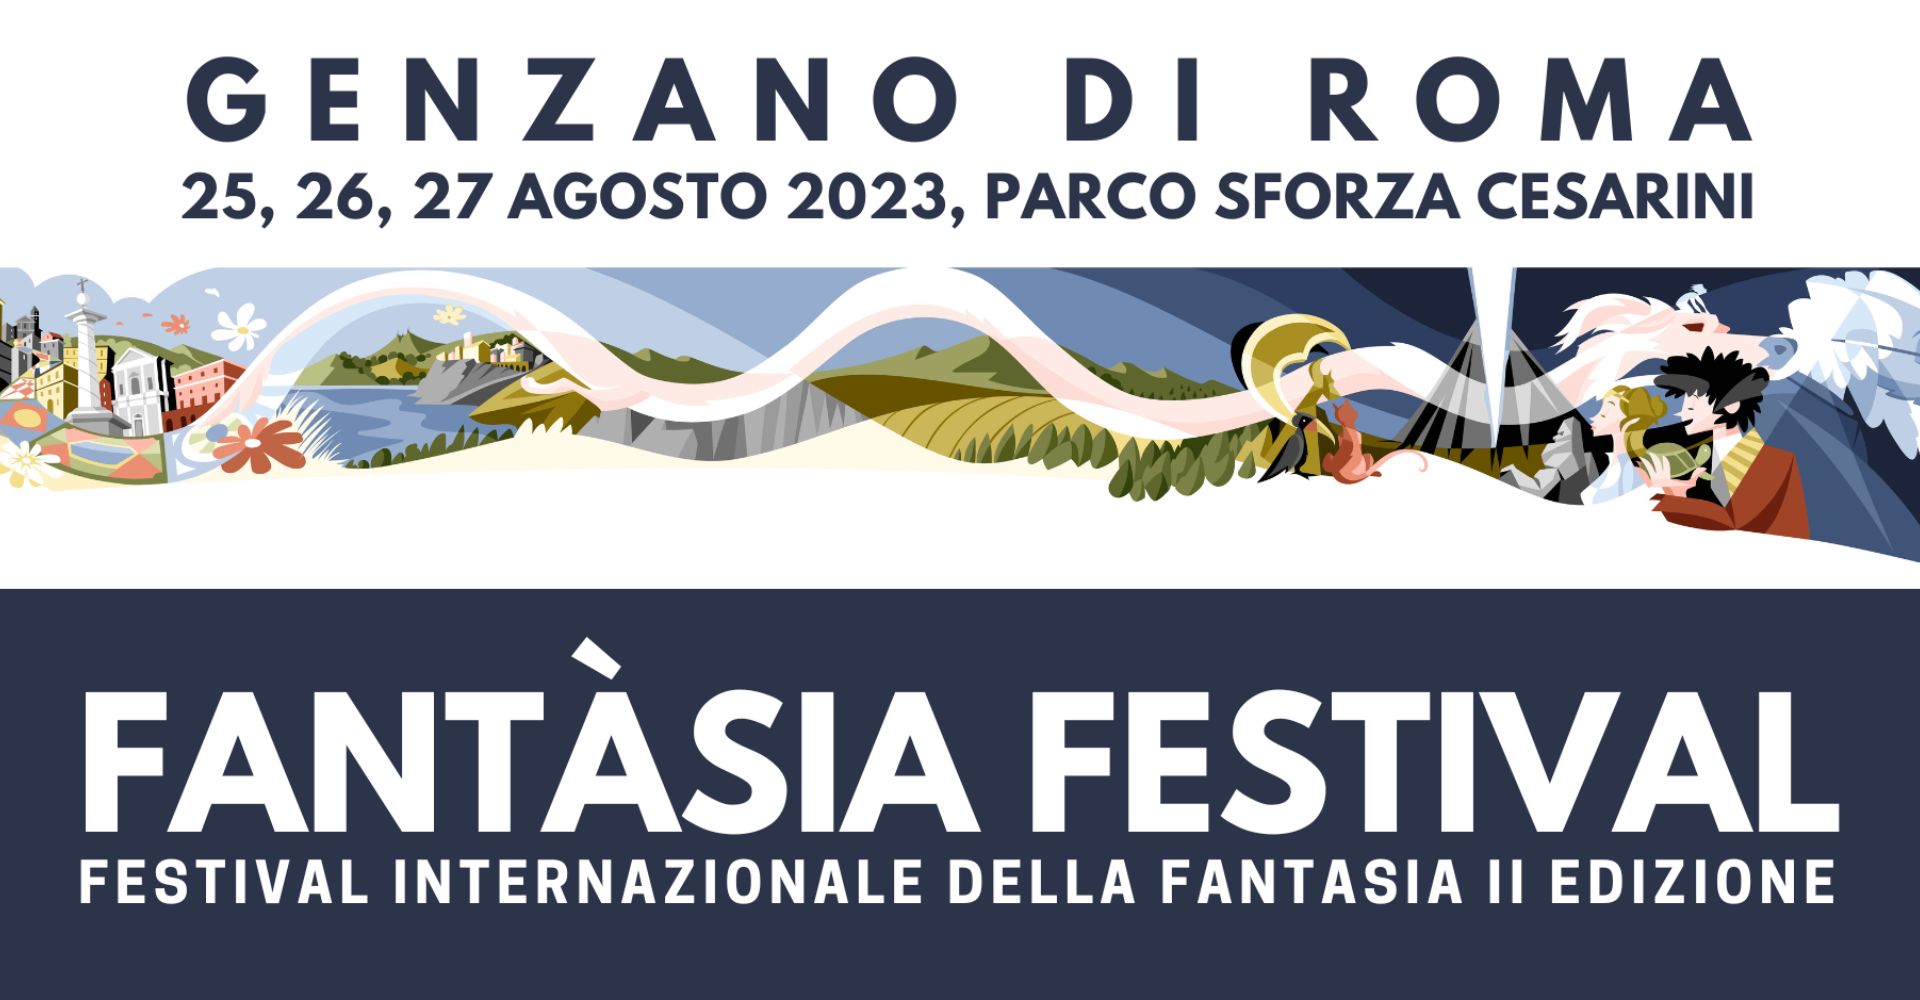 Il ritorno del Festival Internazionale della Fantasia dedicato a Michael Ende